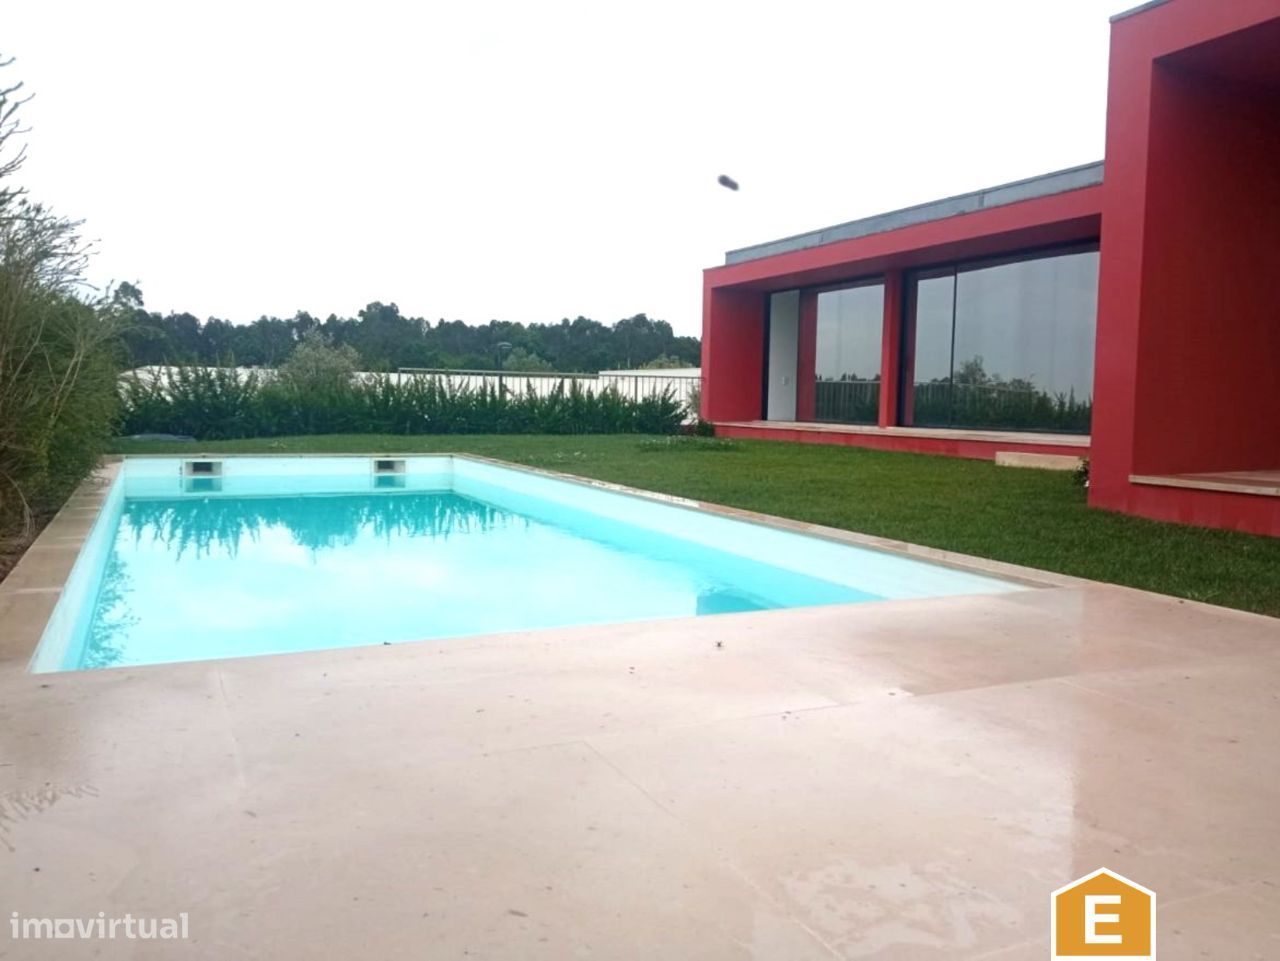 Moradia individual V3 com piscina e jardim - Bom Sucesso Resort